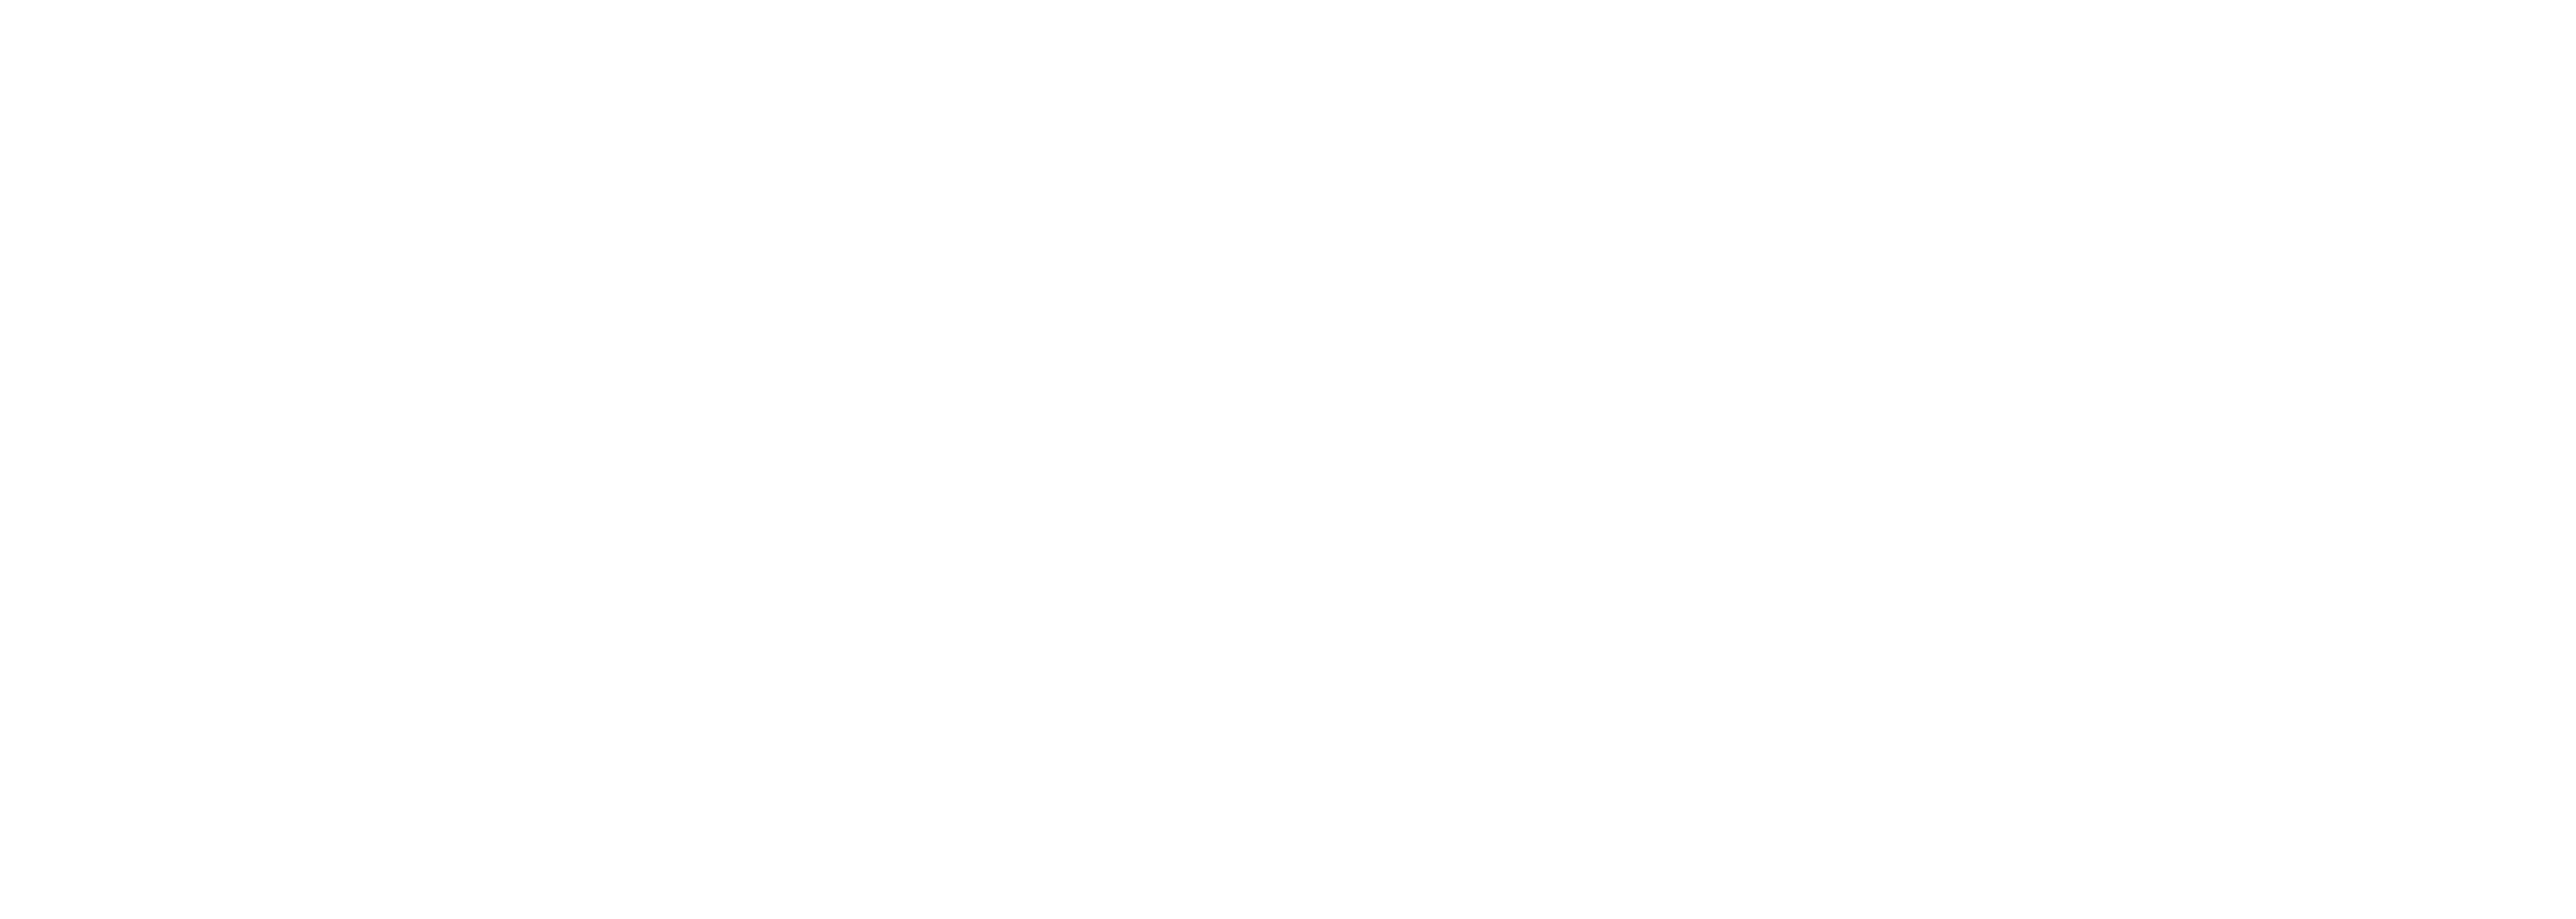 Pin Oak Logo2 - white